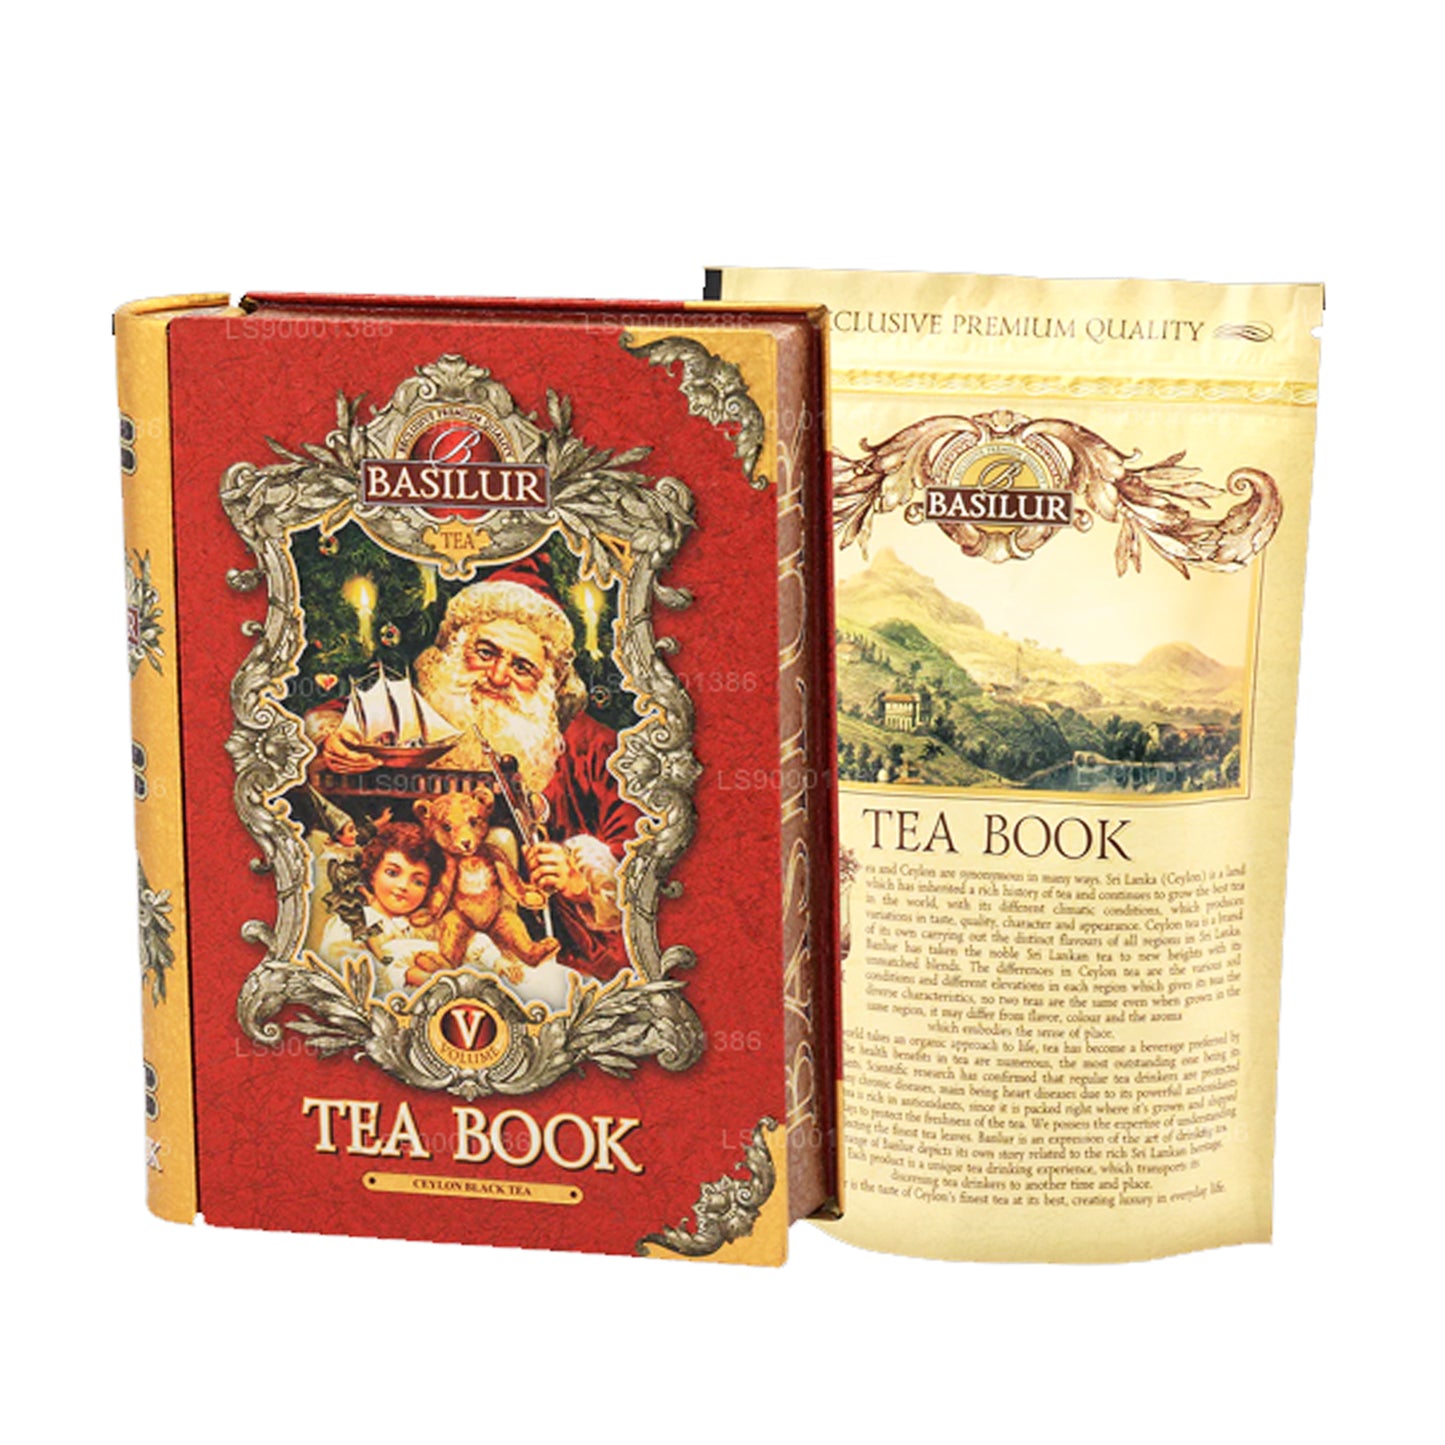 كتاب شاي الشتاء من باسيلور (100 جرام)